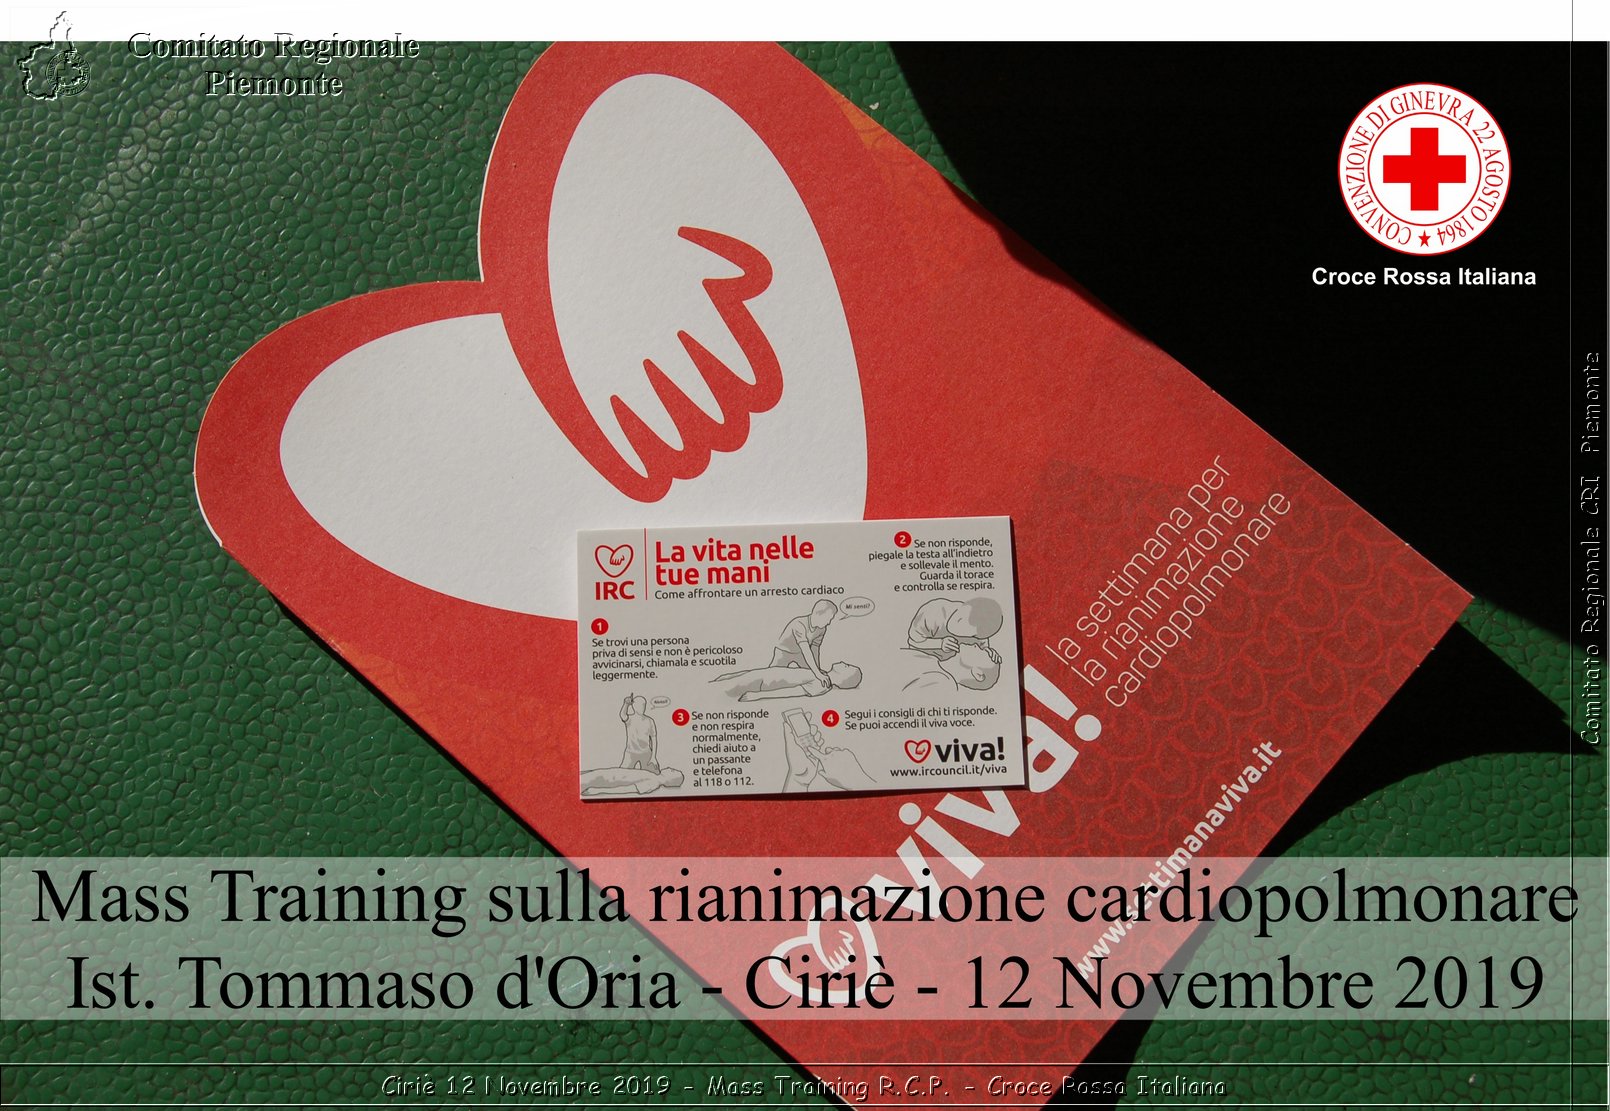 Ciri 12 Novembre 2019 - Mass Training R.C.P. - Croce Rossa Italiana